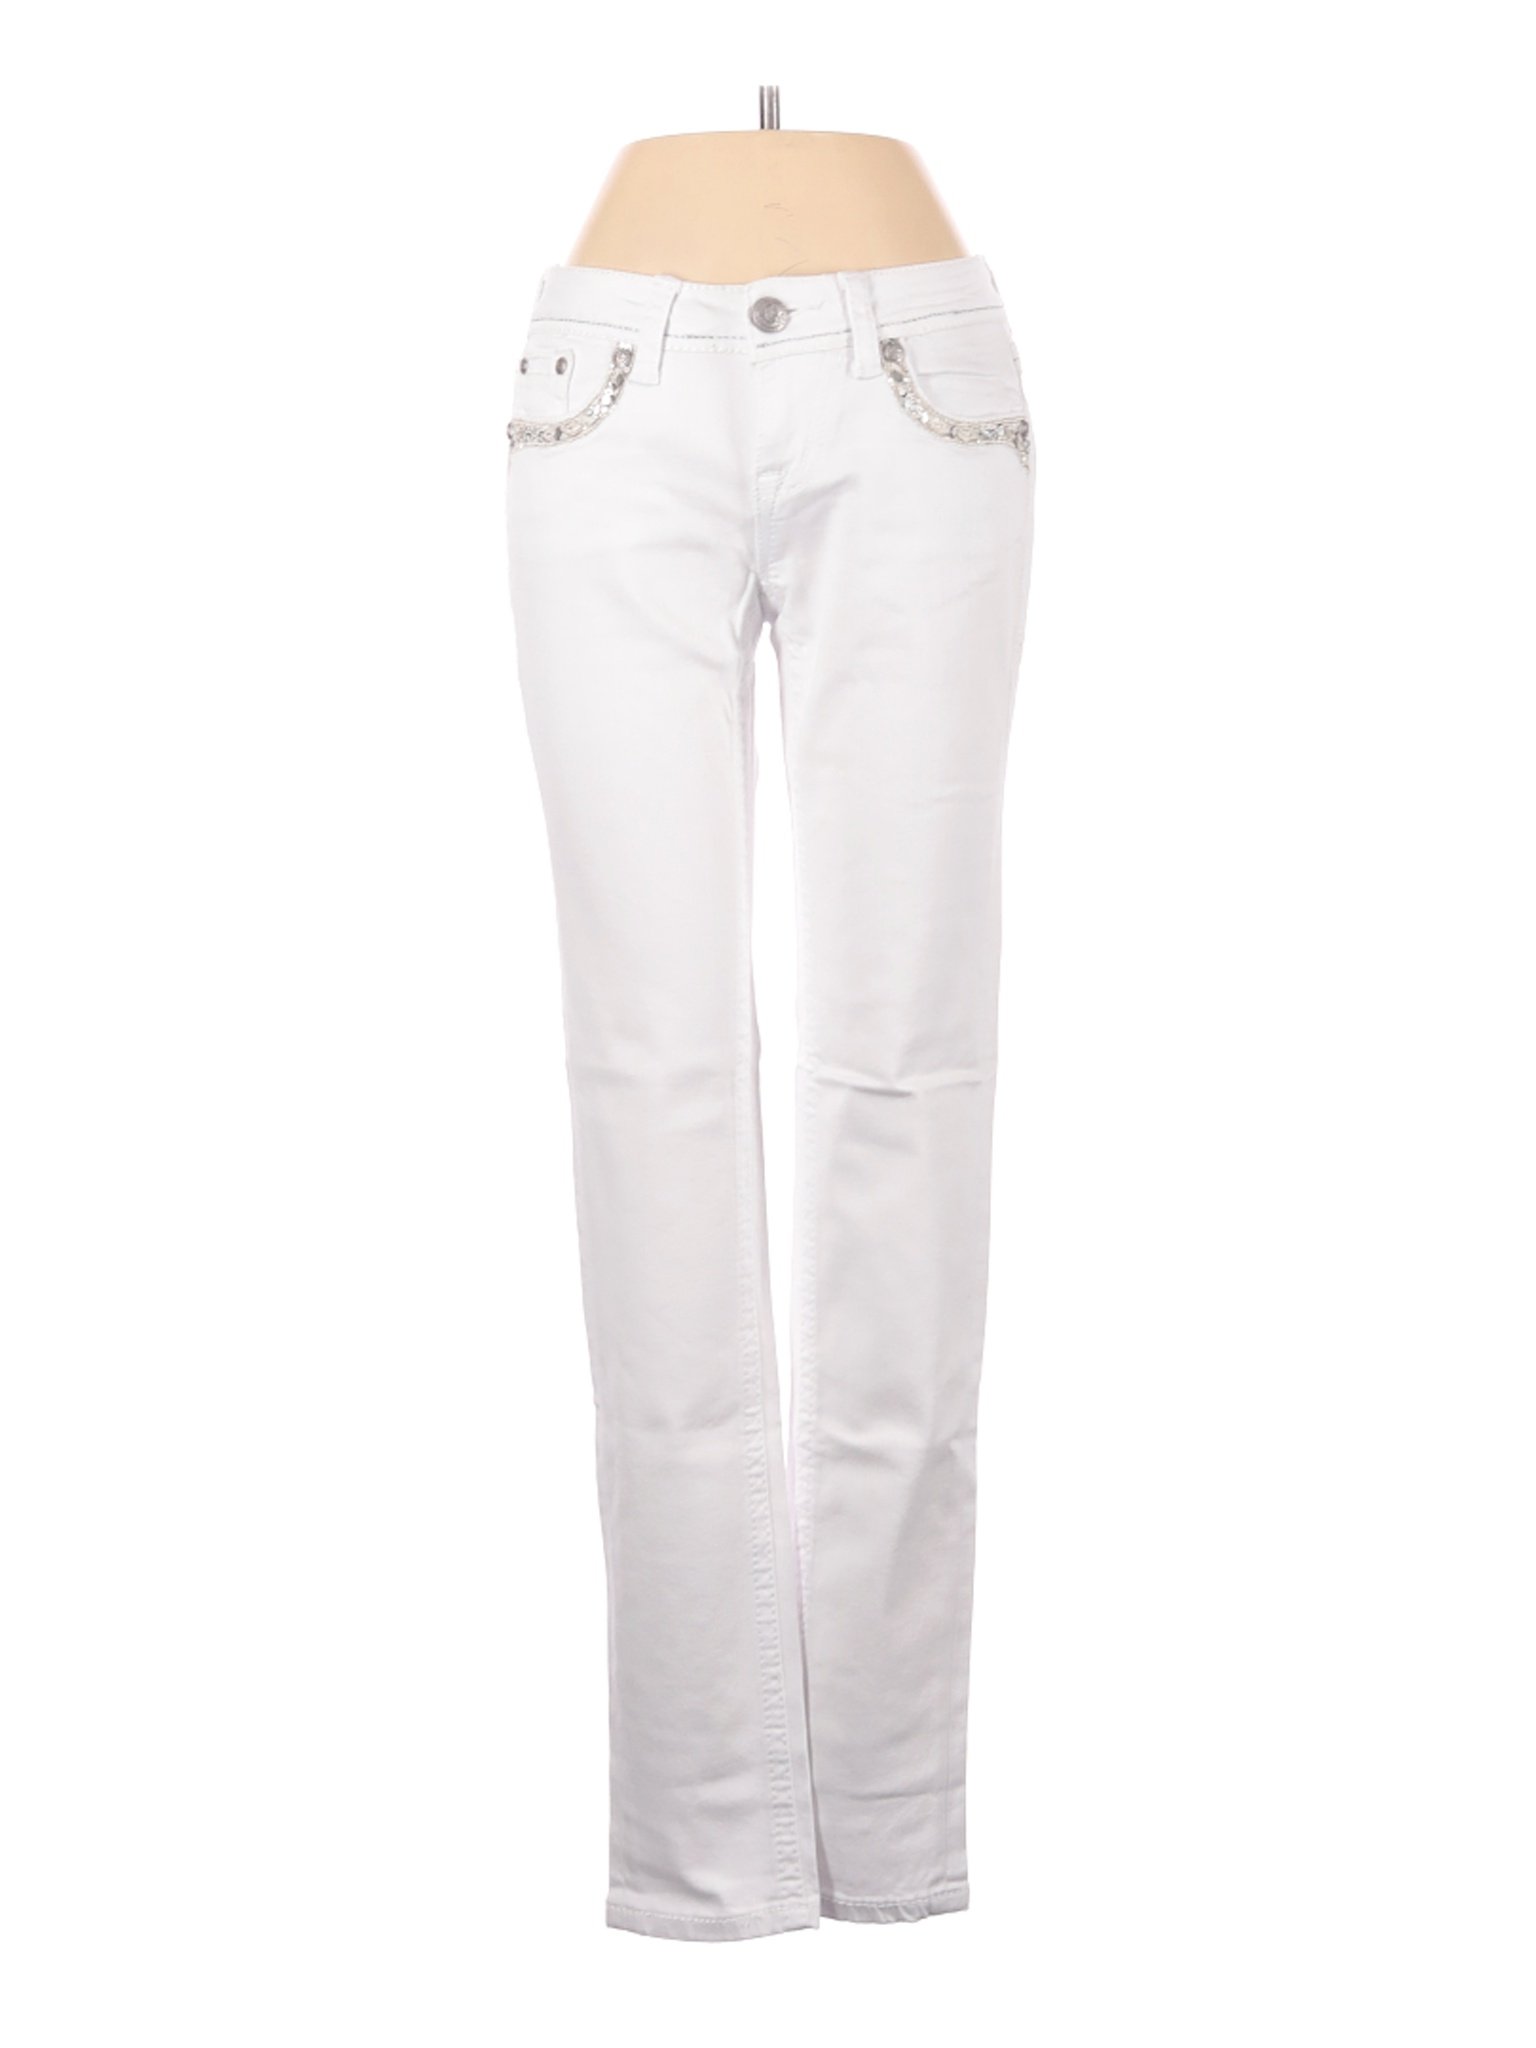 Grace Women White Jeans 25W | eBay